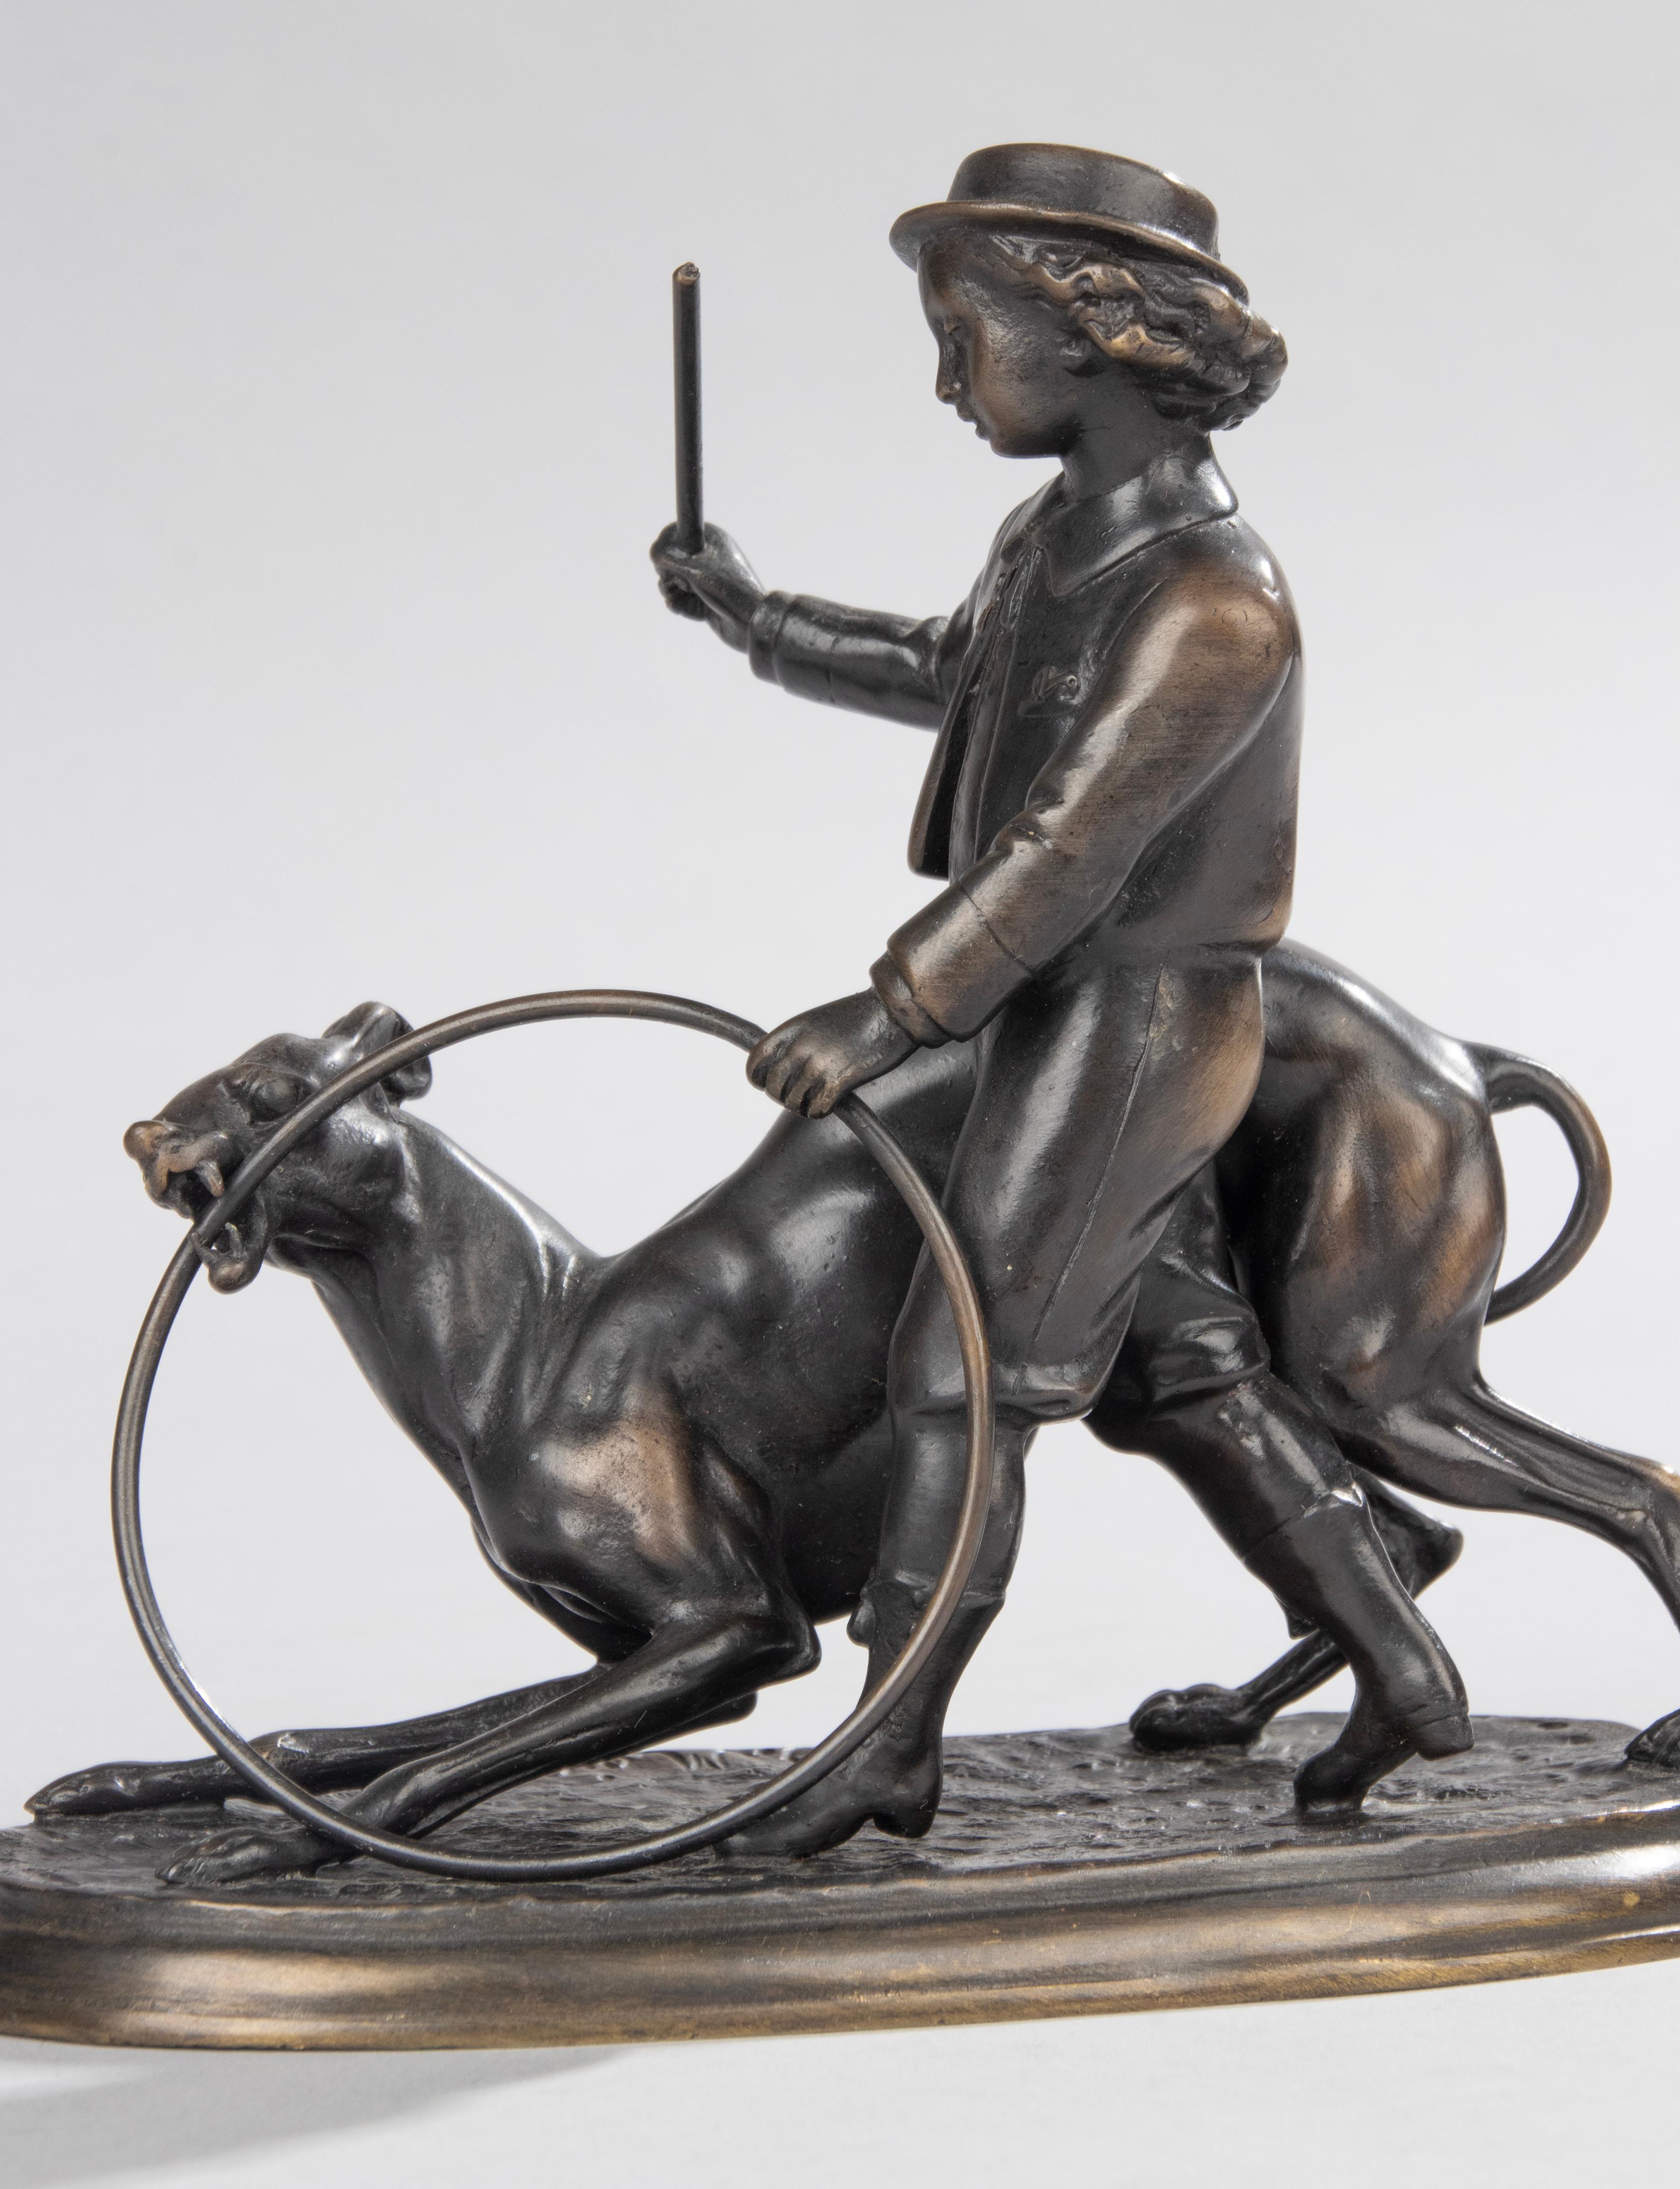 Sculpture ancienne en bronze raffiné représentant un garçon jouant avec un cerceau et un bâton, accompagné d'un chien Whippet/Greyhound. Il a la patine d'origine, signé sur la base : Jules Moigniez. Fabriqué en France vers 1870-1880.

Jules